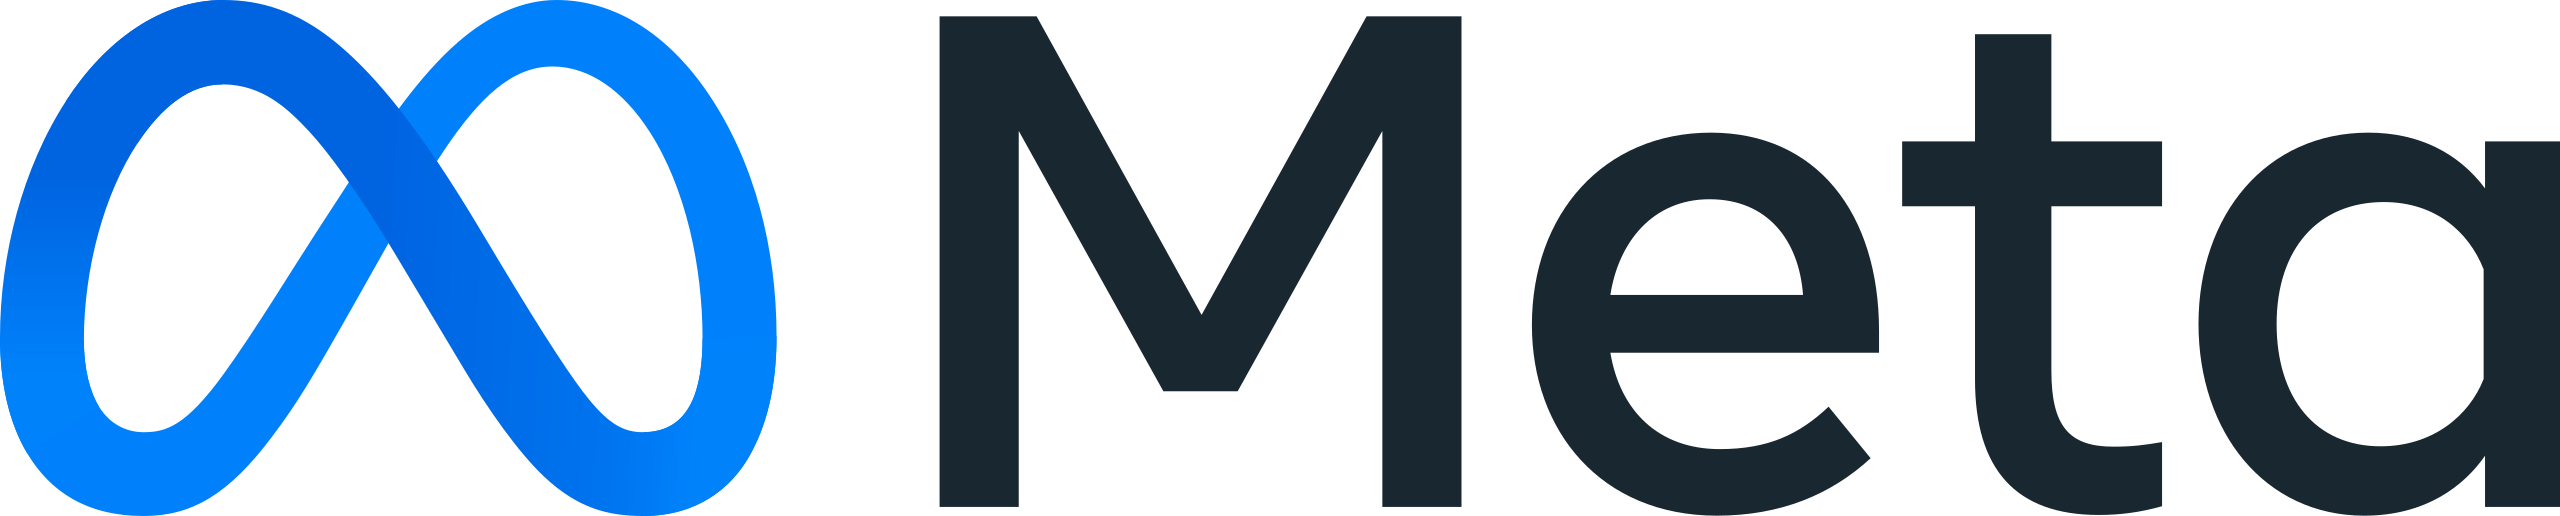 Panneaux Photovoltaïques Meta Platforms Inc. logo.